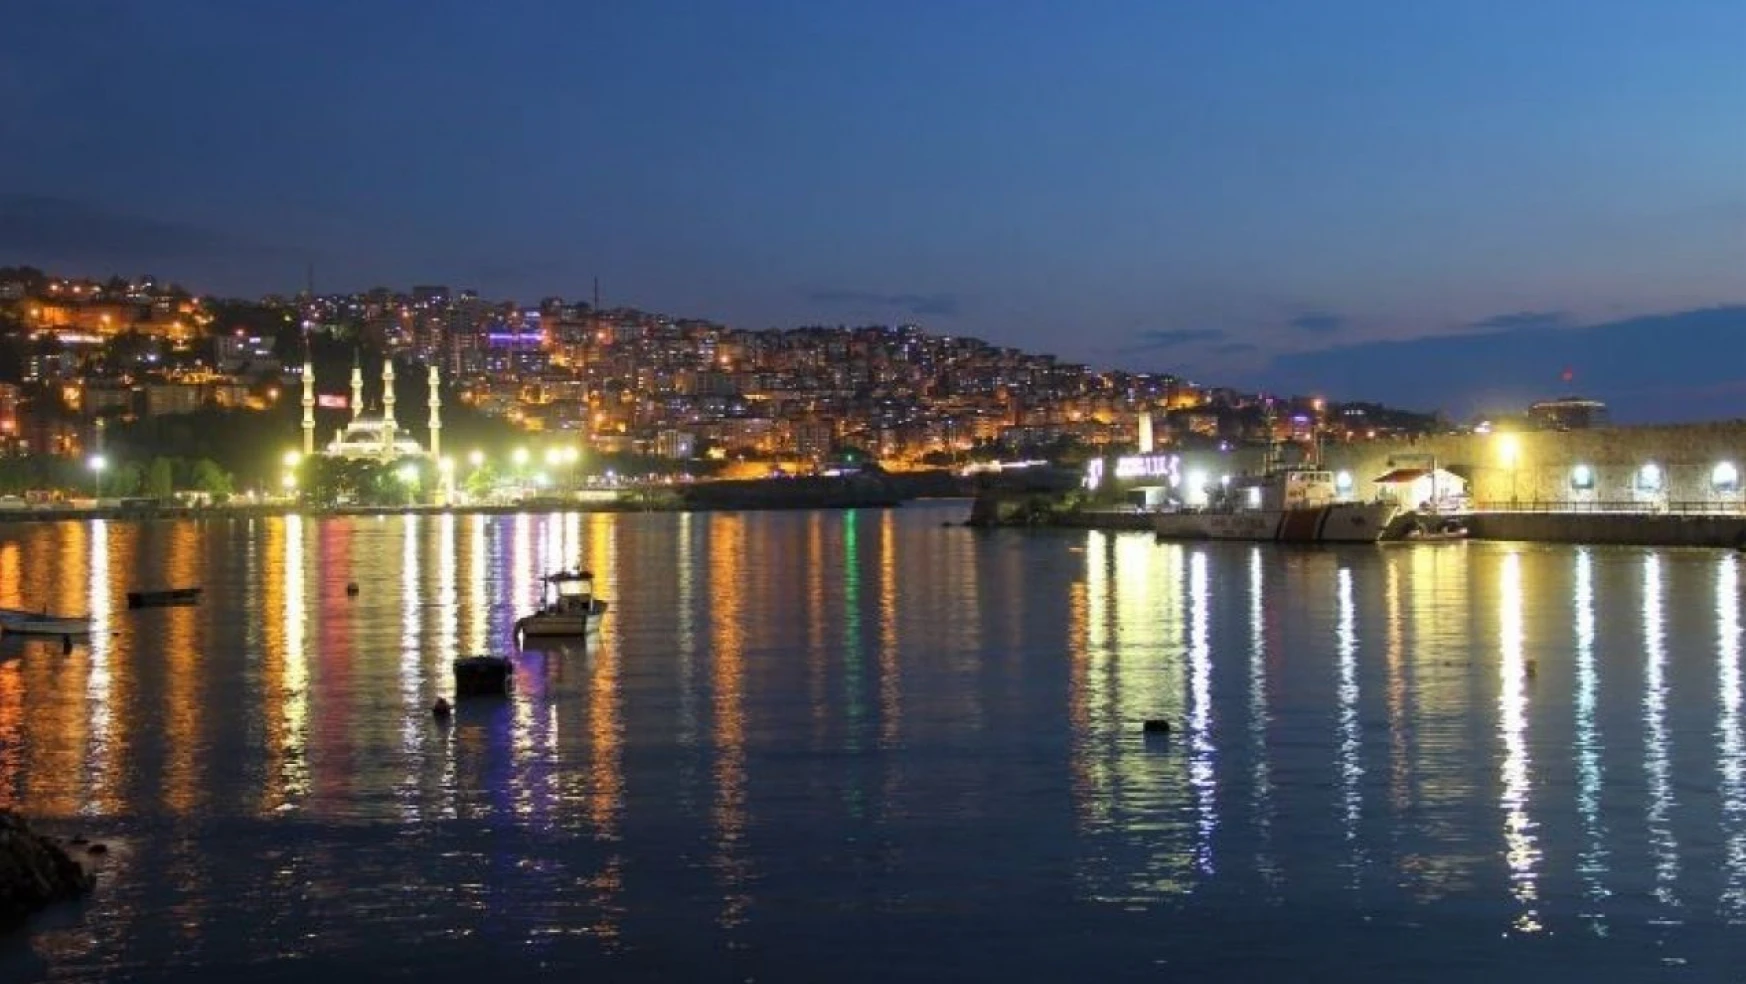 Zonguldak İl Merkezinin En Büyük Mahallesi Belli Oldu